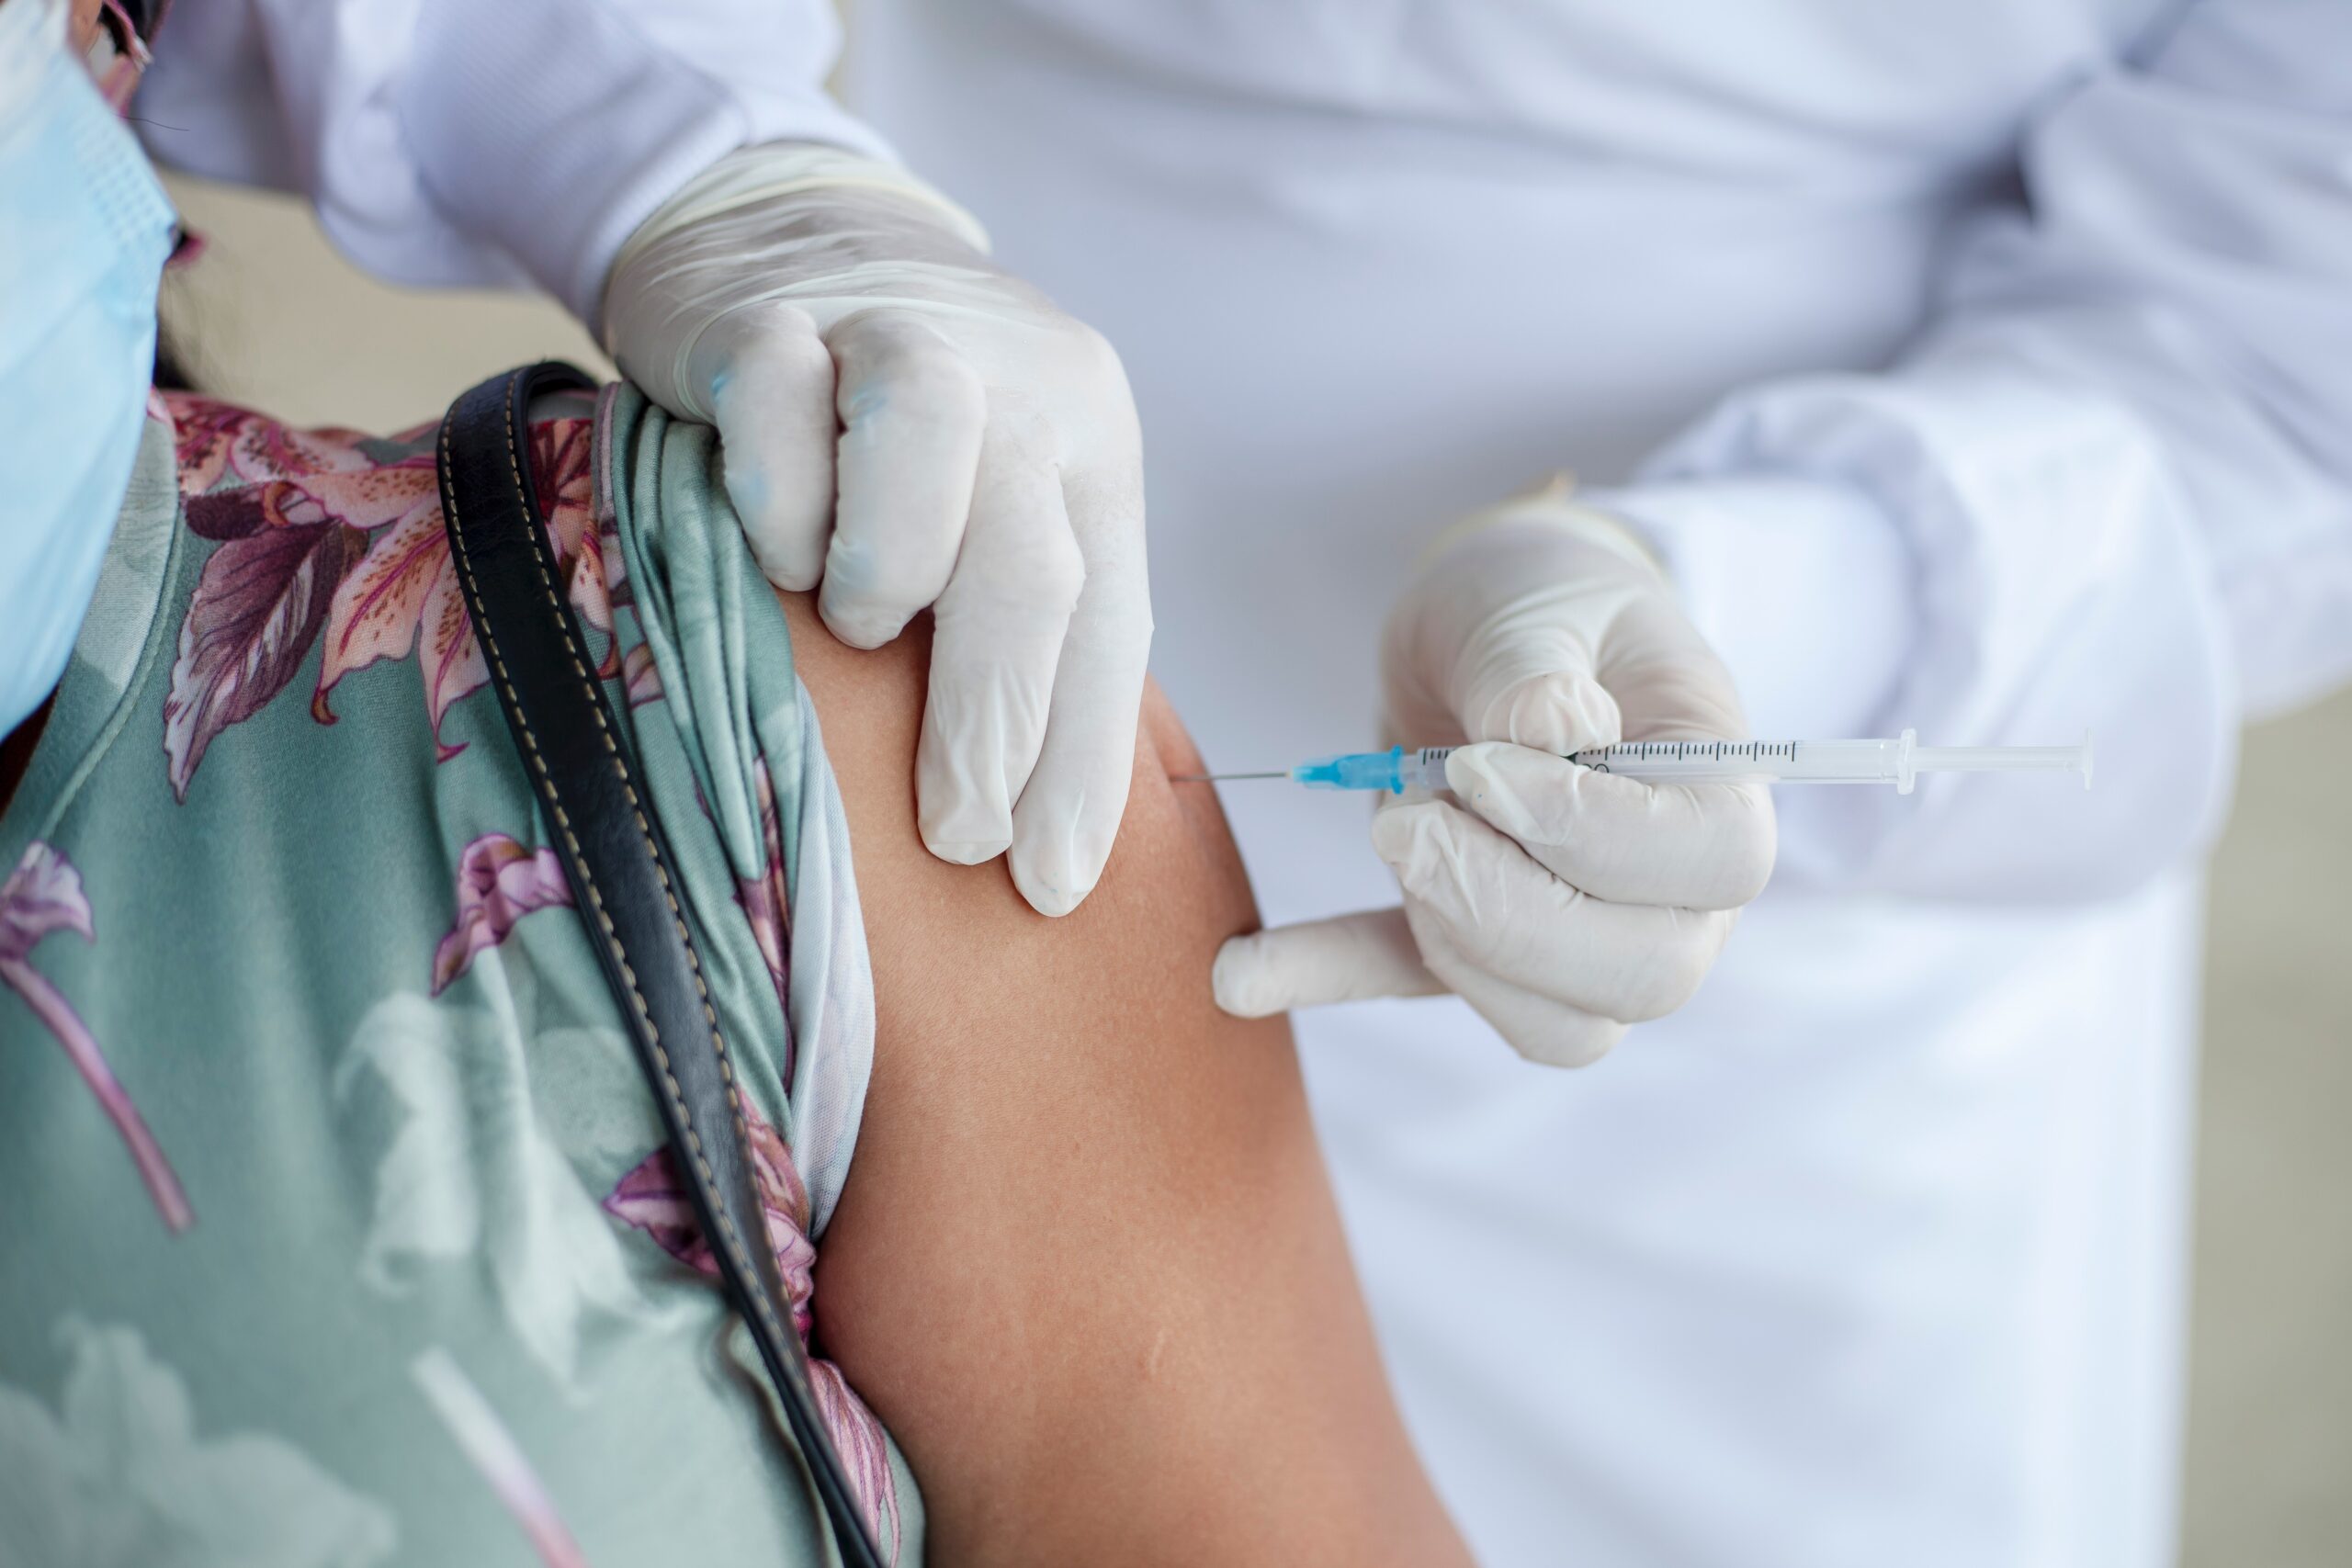 Vaccino anti-covid: dalle 18 prenotabile terza dose per 16-17enni e fragili 12-17